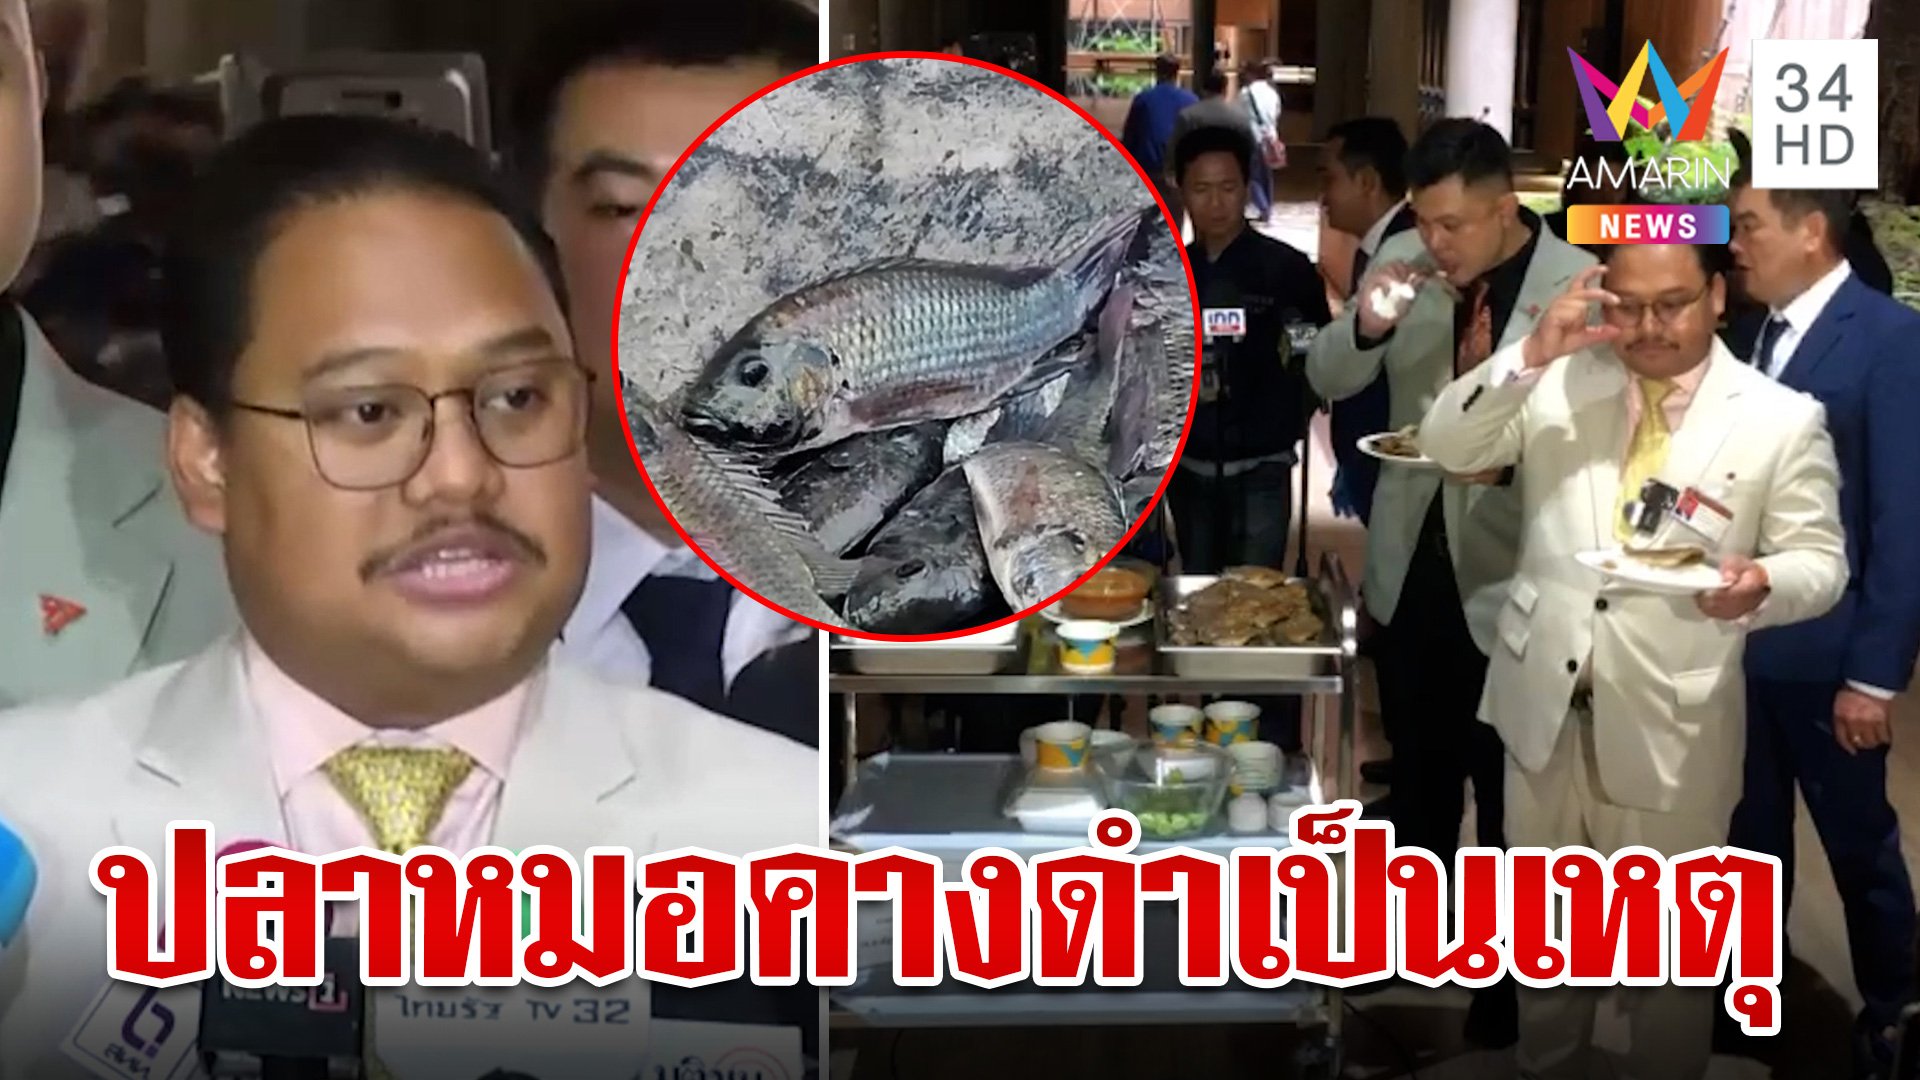 "ณัฐชา" เดือด ถูกสั่งห้ามถ่ายภาพตอนกินปลาหมอคางดำทอดในสภา | ทุบโต๊ะข่าว | 25 ก.ค. 67 | AMARIN TVHD34